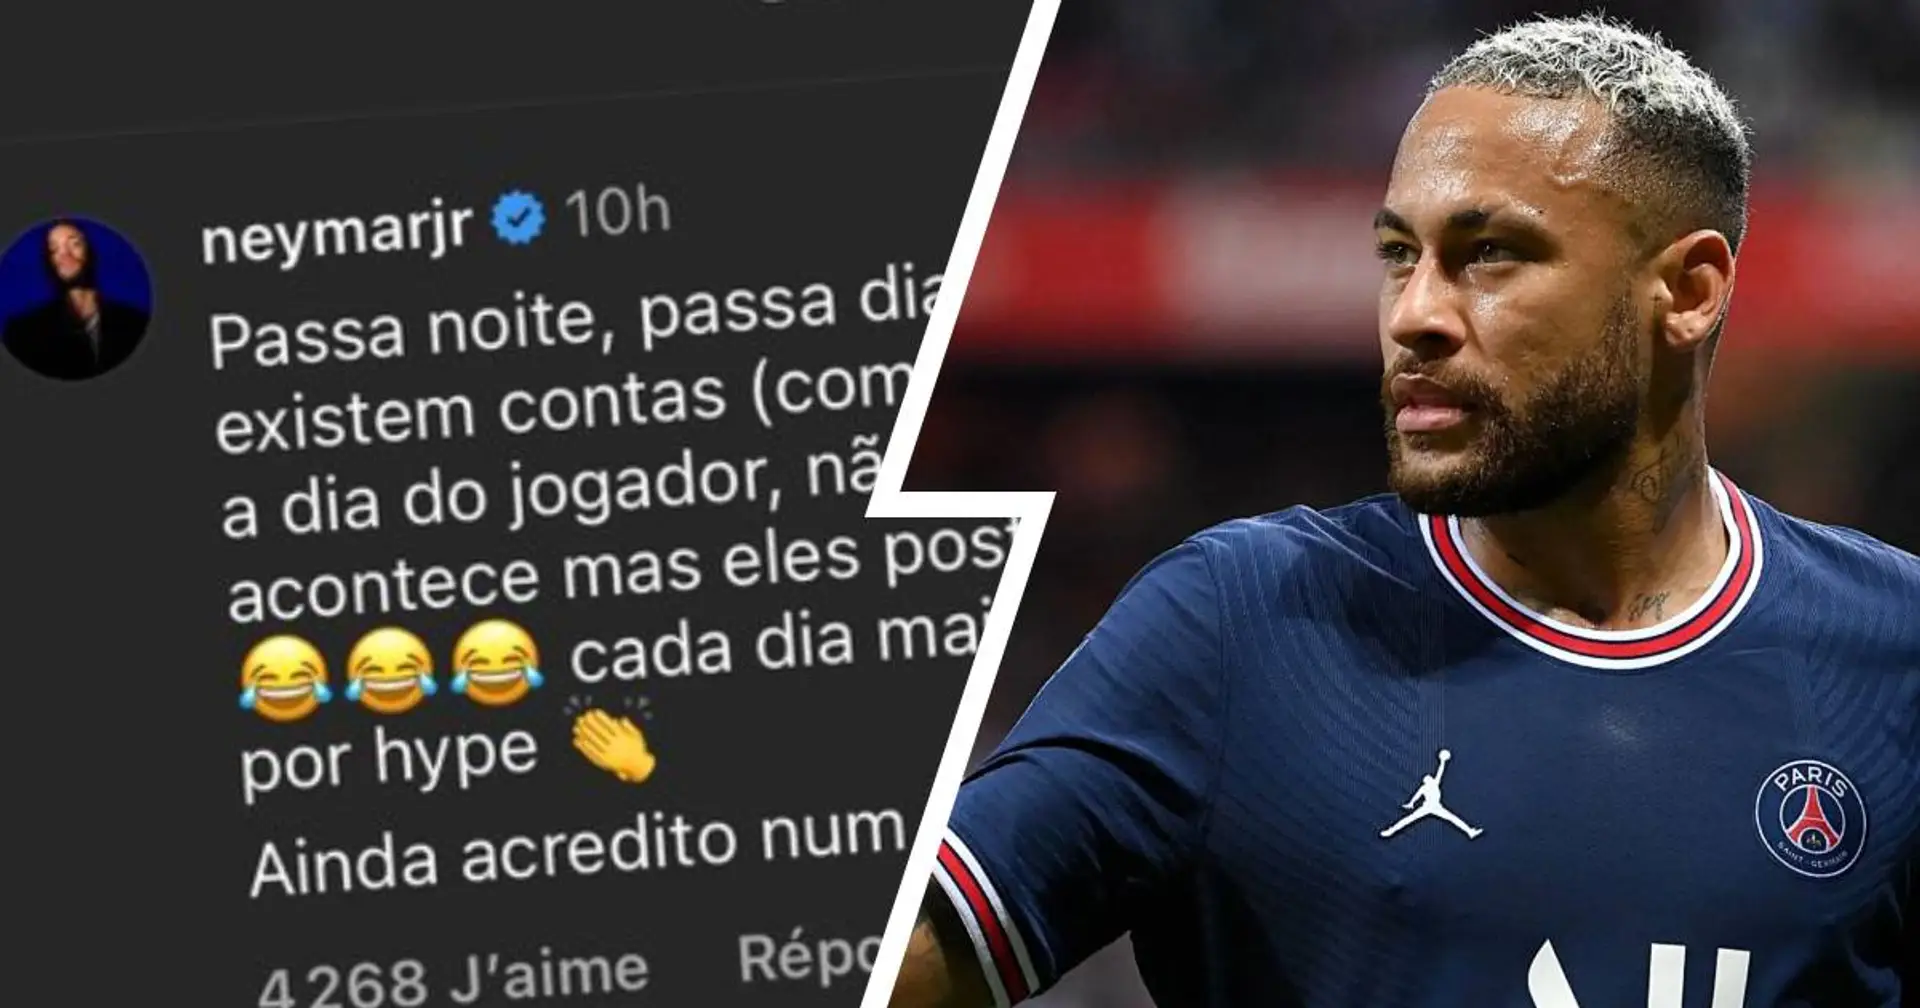 "Je crois toujours en un avenir sans fake news" : Neymar balaie une rumeur sur les raisons de son départ du PSG